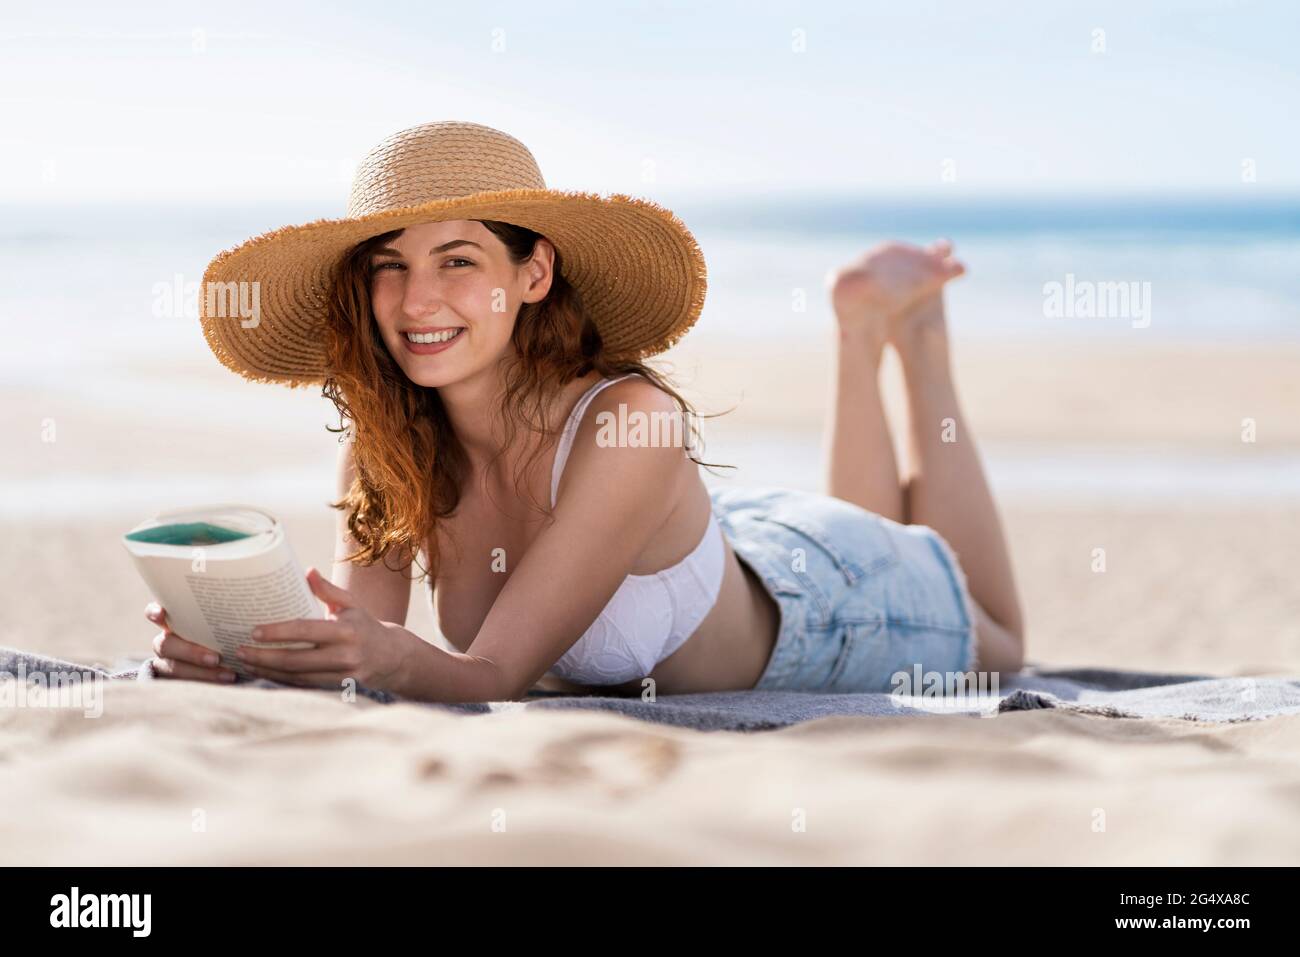 Sola Mujer Tumbarse Toalla De Playa Tan Vacía Playa De Verano Sonriente  Gafas De Sol Grandes Fotos, retratos, imágenes y fotografía de archivo  libres de derecho. Image 93294340